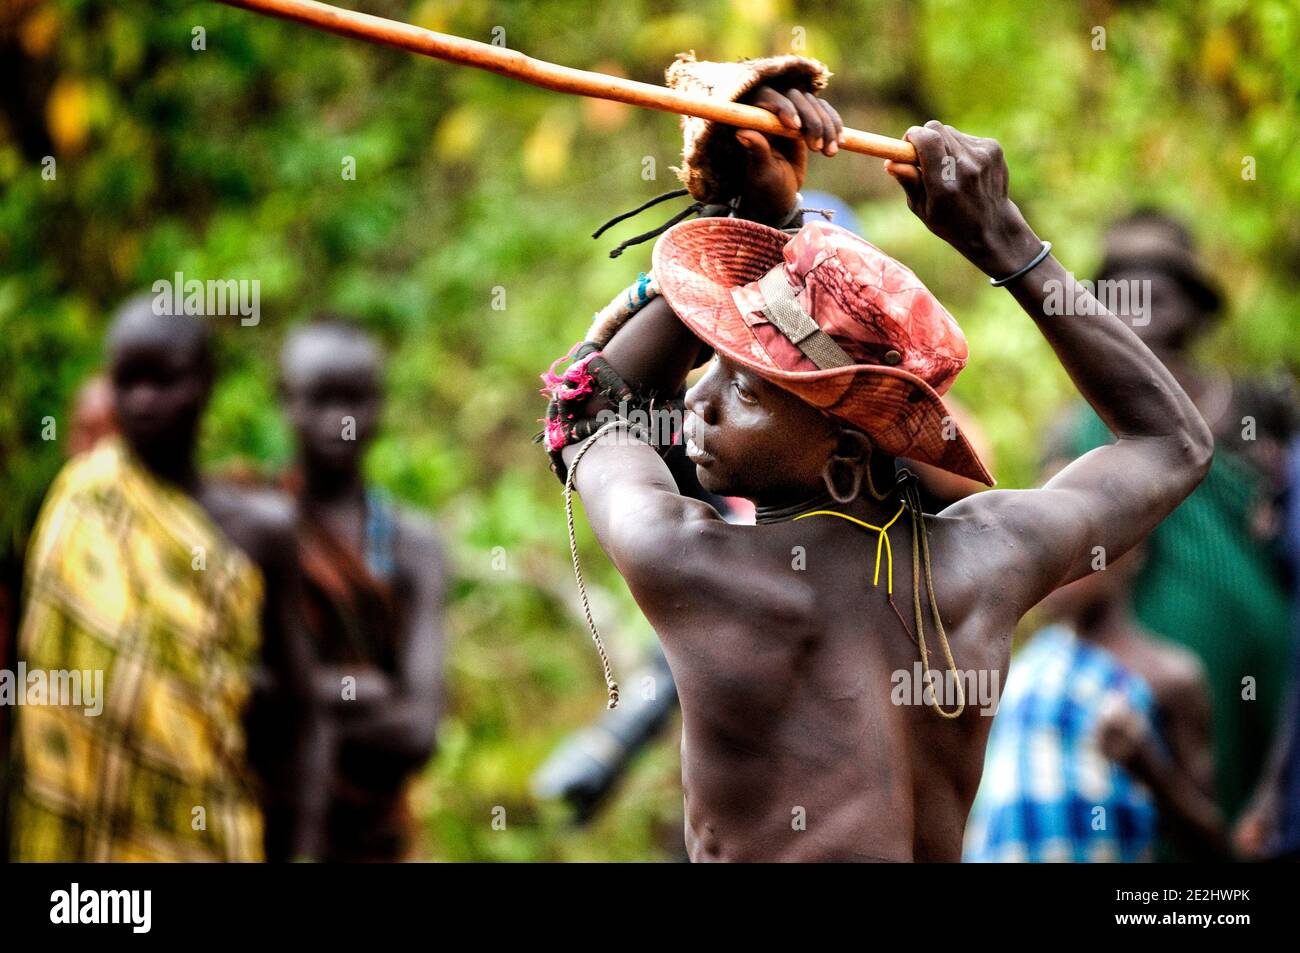 Cet homme de Suri lève son bâton dans la bataille. OMO VALLEY, ETHIOPIE: RENCONTREZ LA tribu qui s'engage dans un violent et sanglant bâton de combat avec le dernier homme standi Banque D'Images